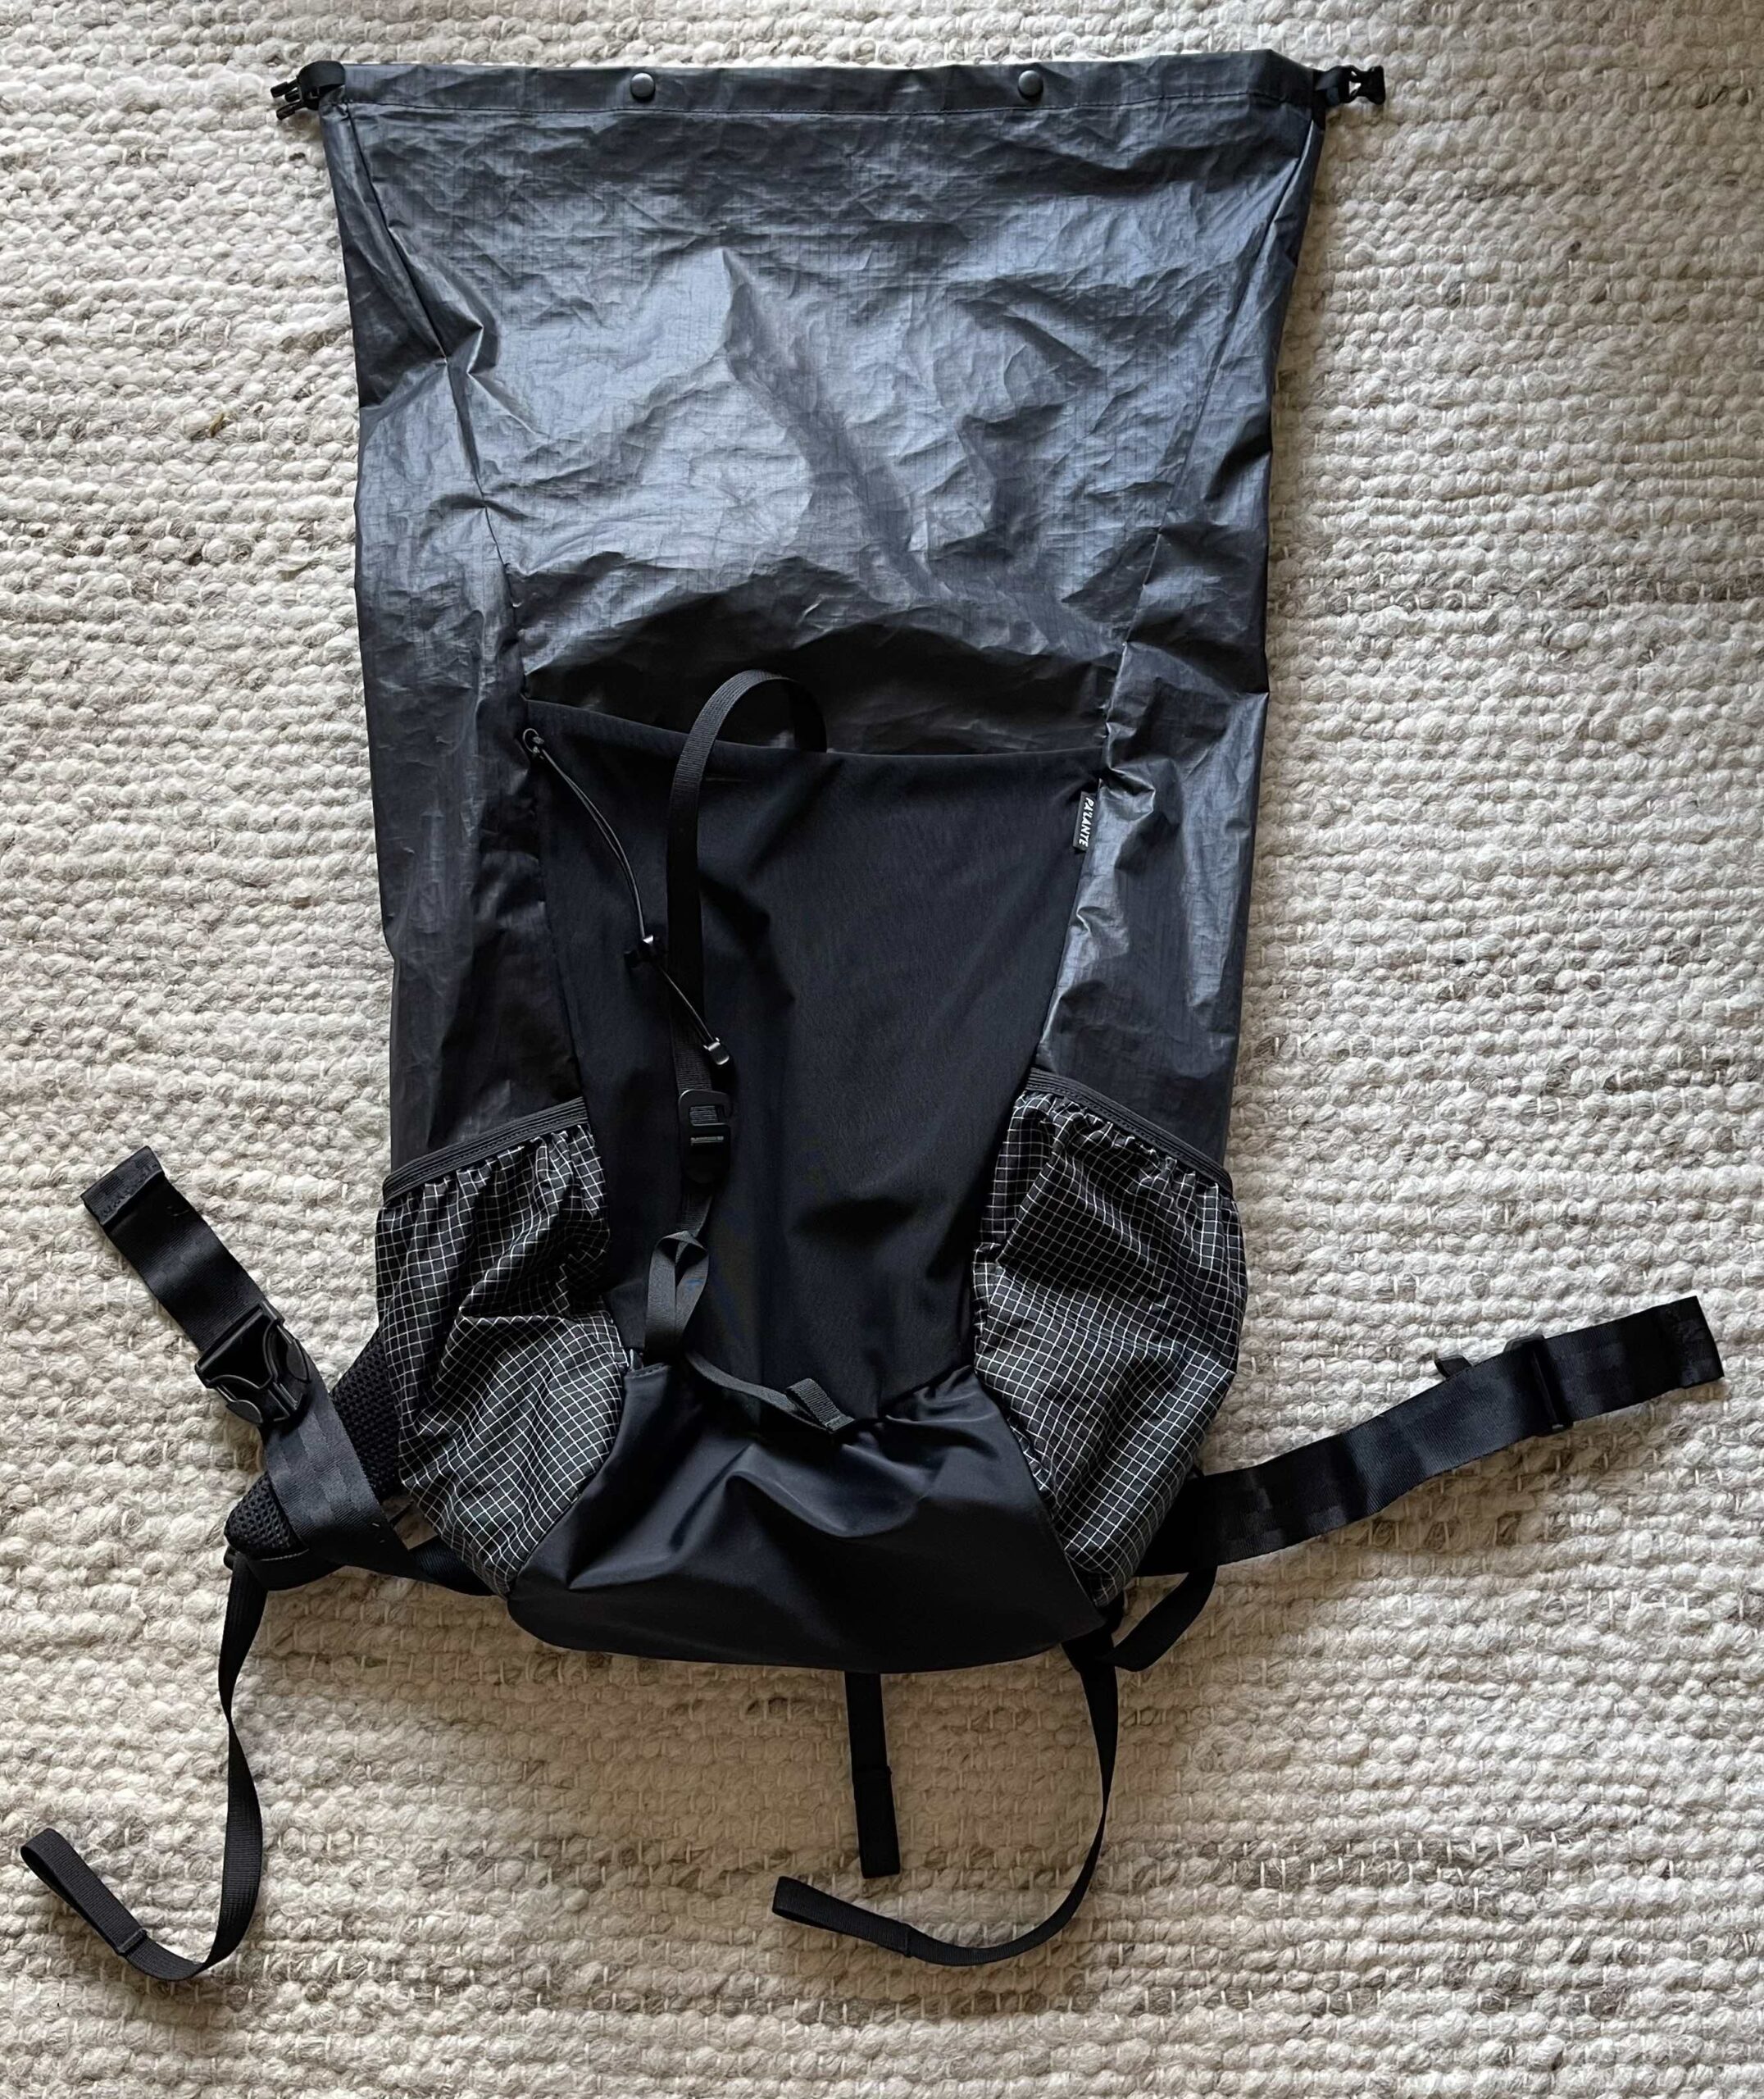 超熱 極美品 blooper backpacks MIZUNARA40 アウトドア グレー x-pac